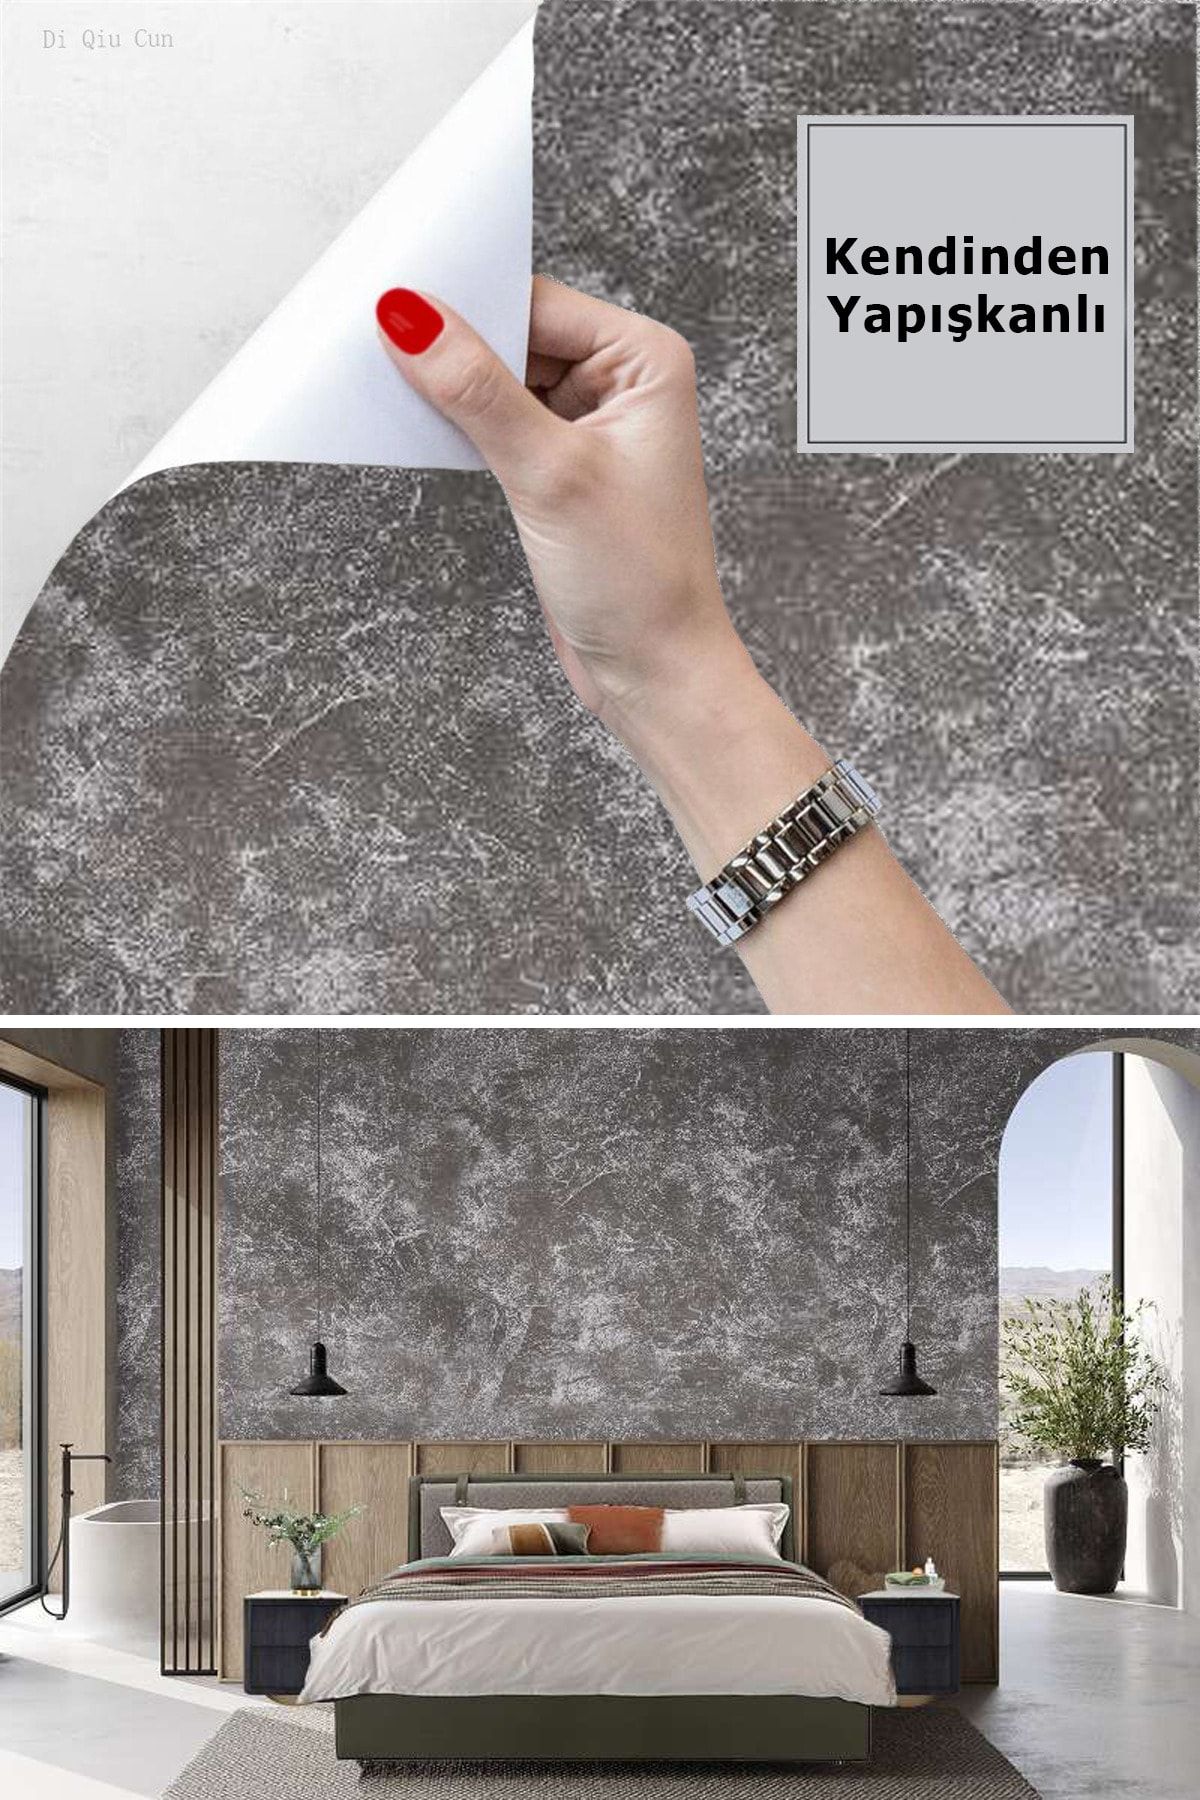 TechnoSmart Desenli Kendinden Yapışkanlı Duvar Kağıdı Mutfak Dolap Kaplama Dekorasyon